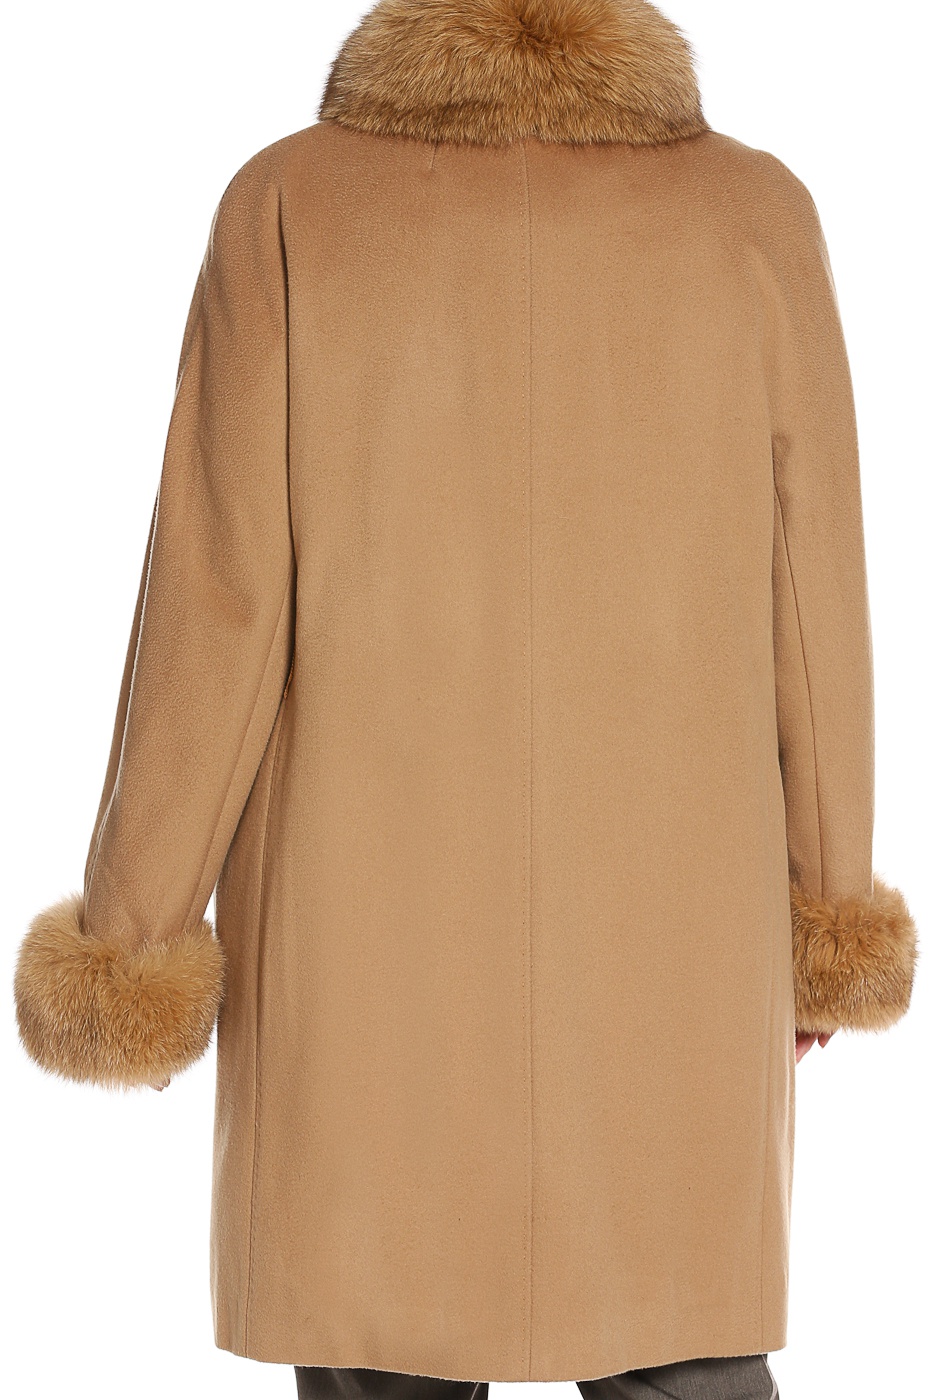 Продам новое пальто из шерсти Elena Miro 52-54 размер